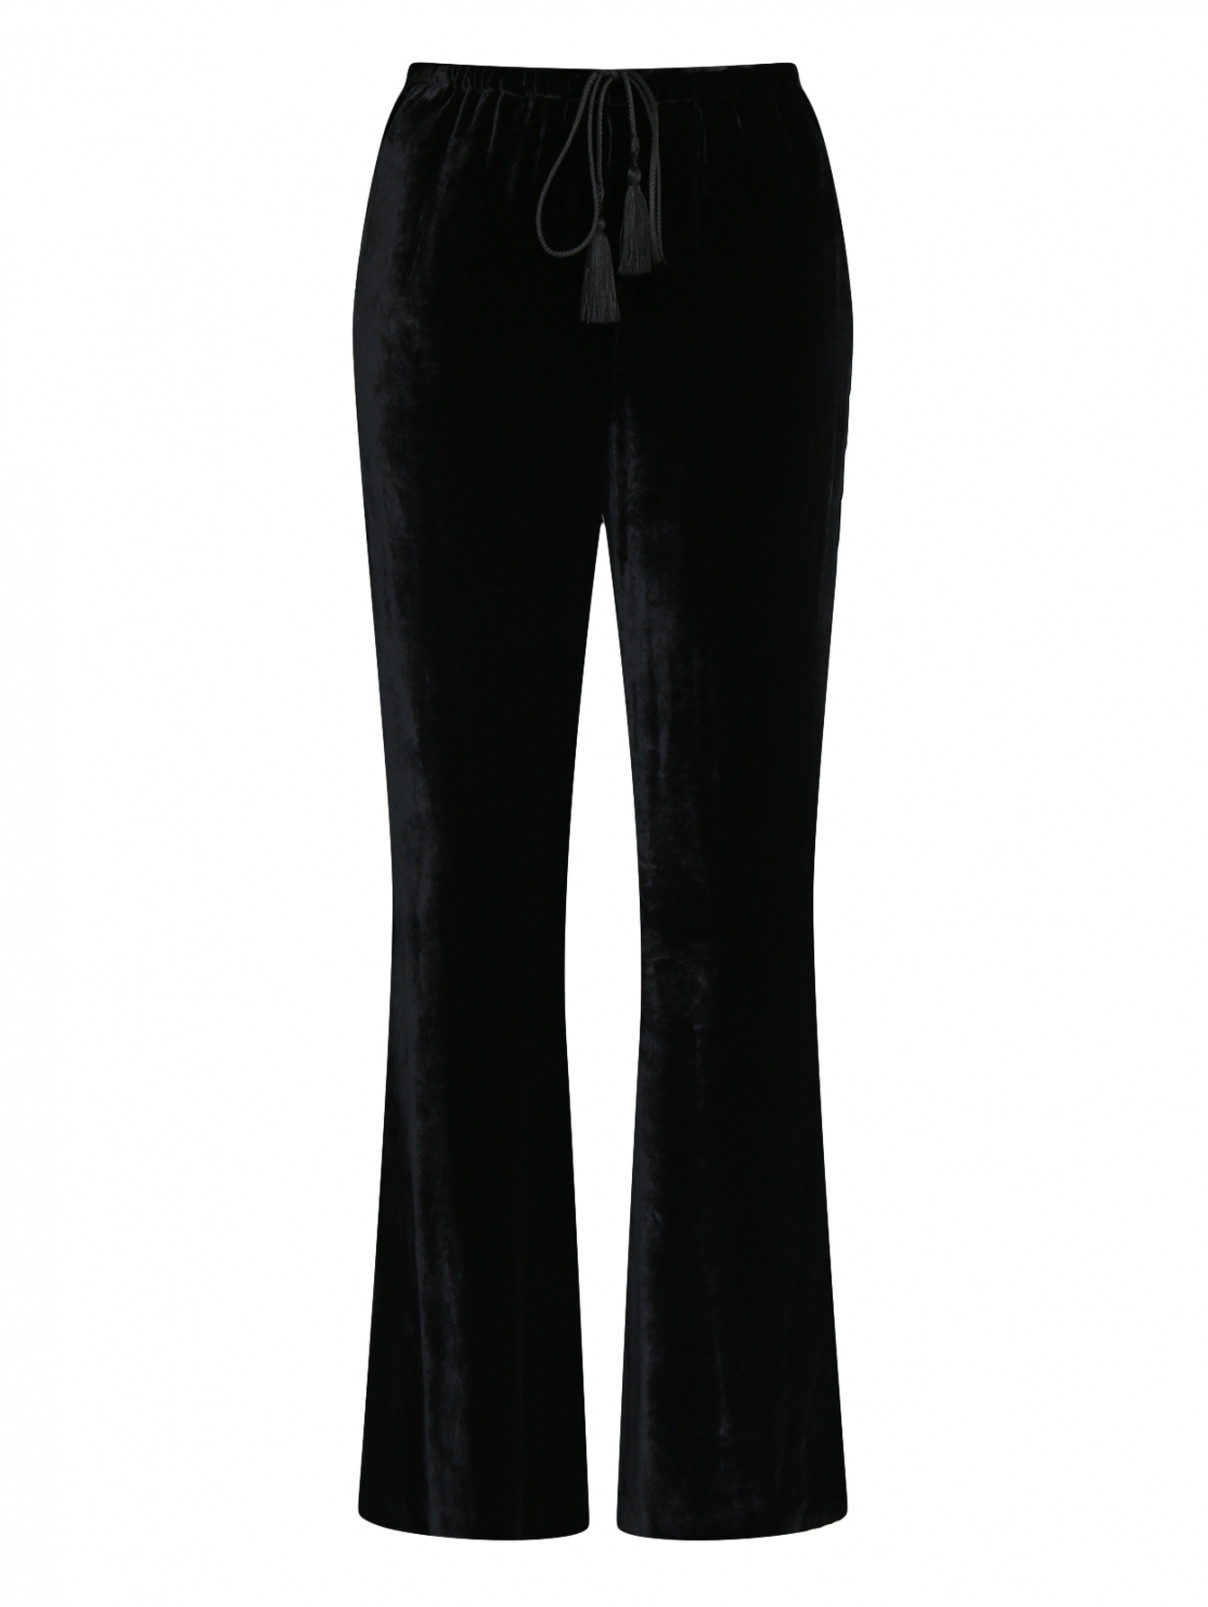 Бархатные брюки свободного кроя на резинке Etro  –  Общий вид  – Цвет:  Черный